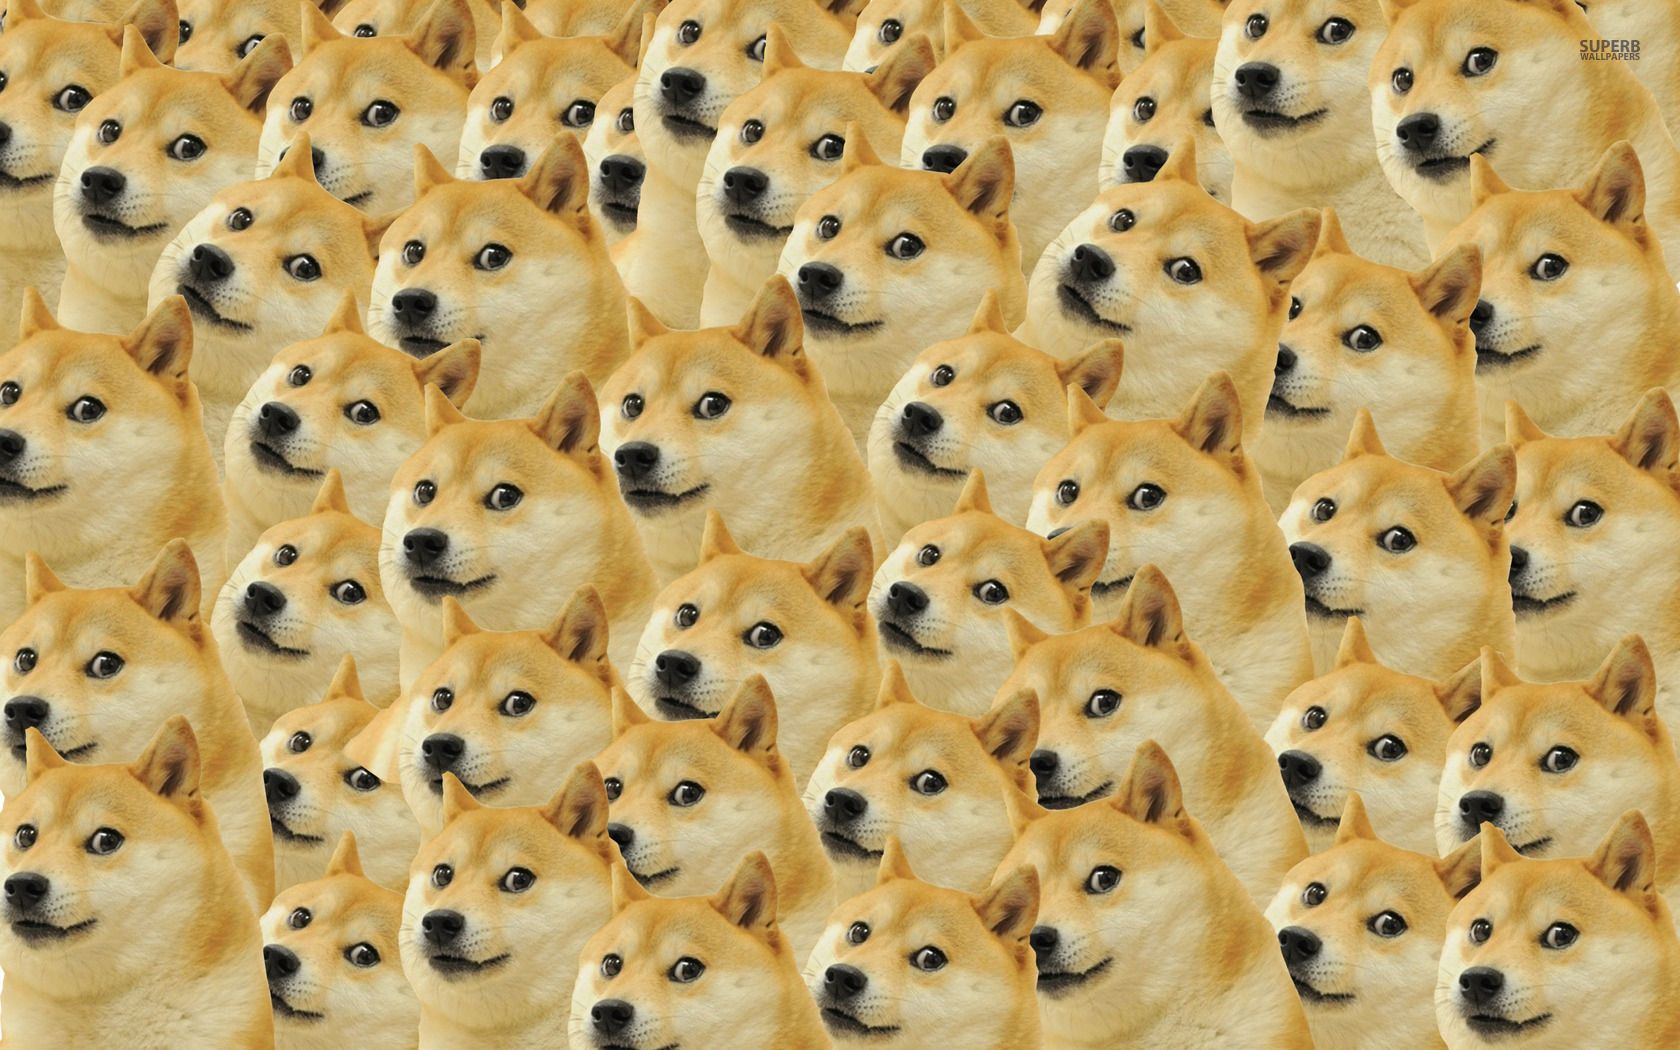 Doge pattern wallpaper. Doge meme, Doge, Doge dog